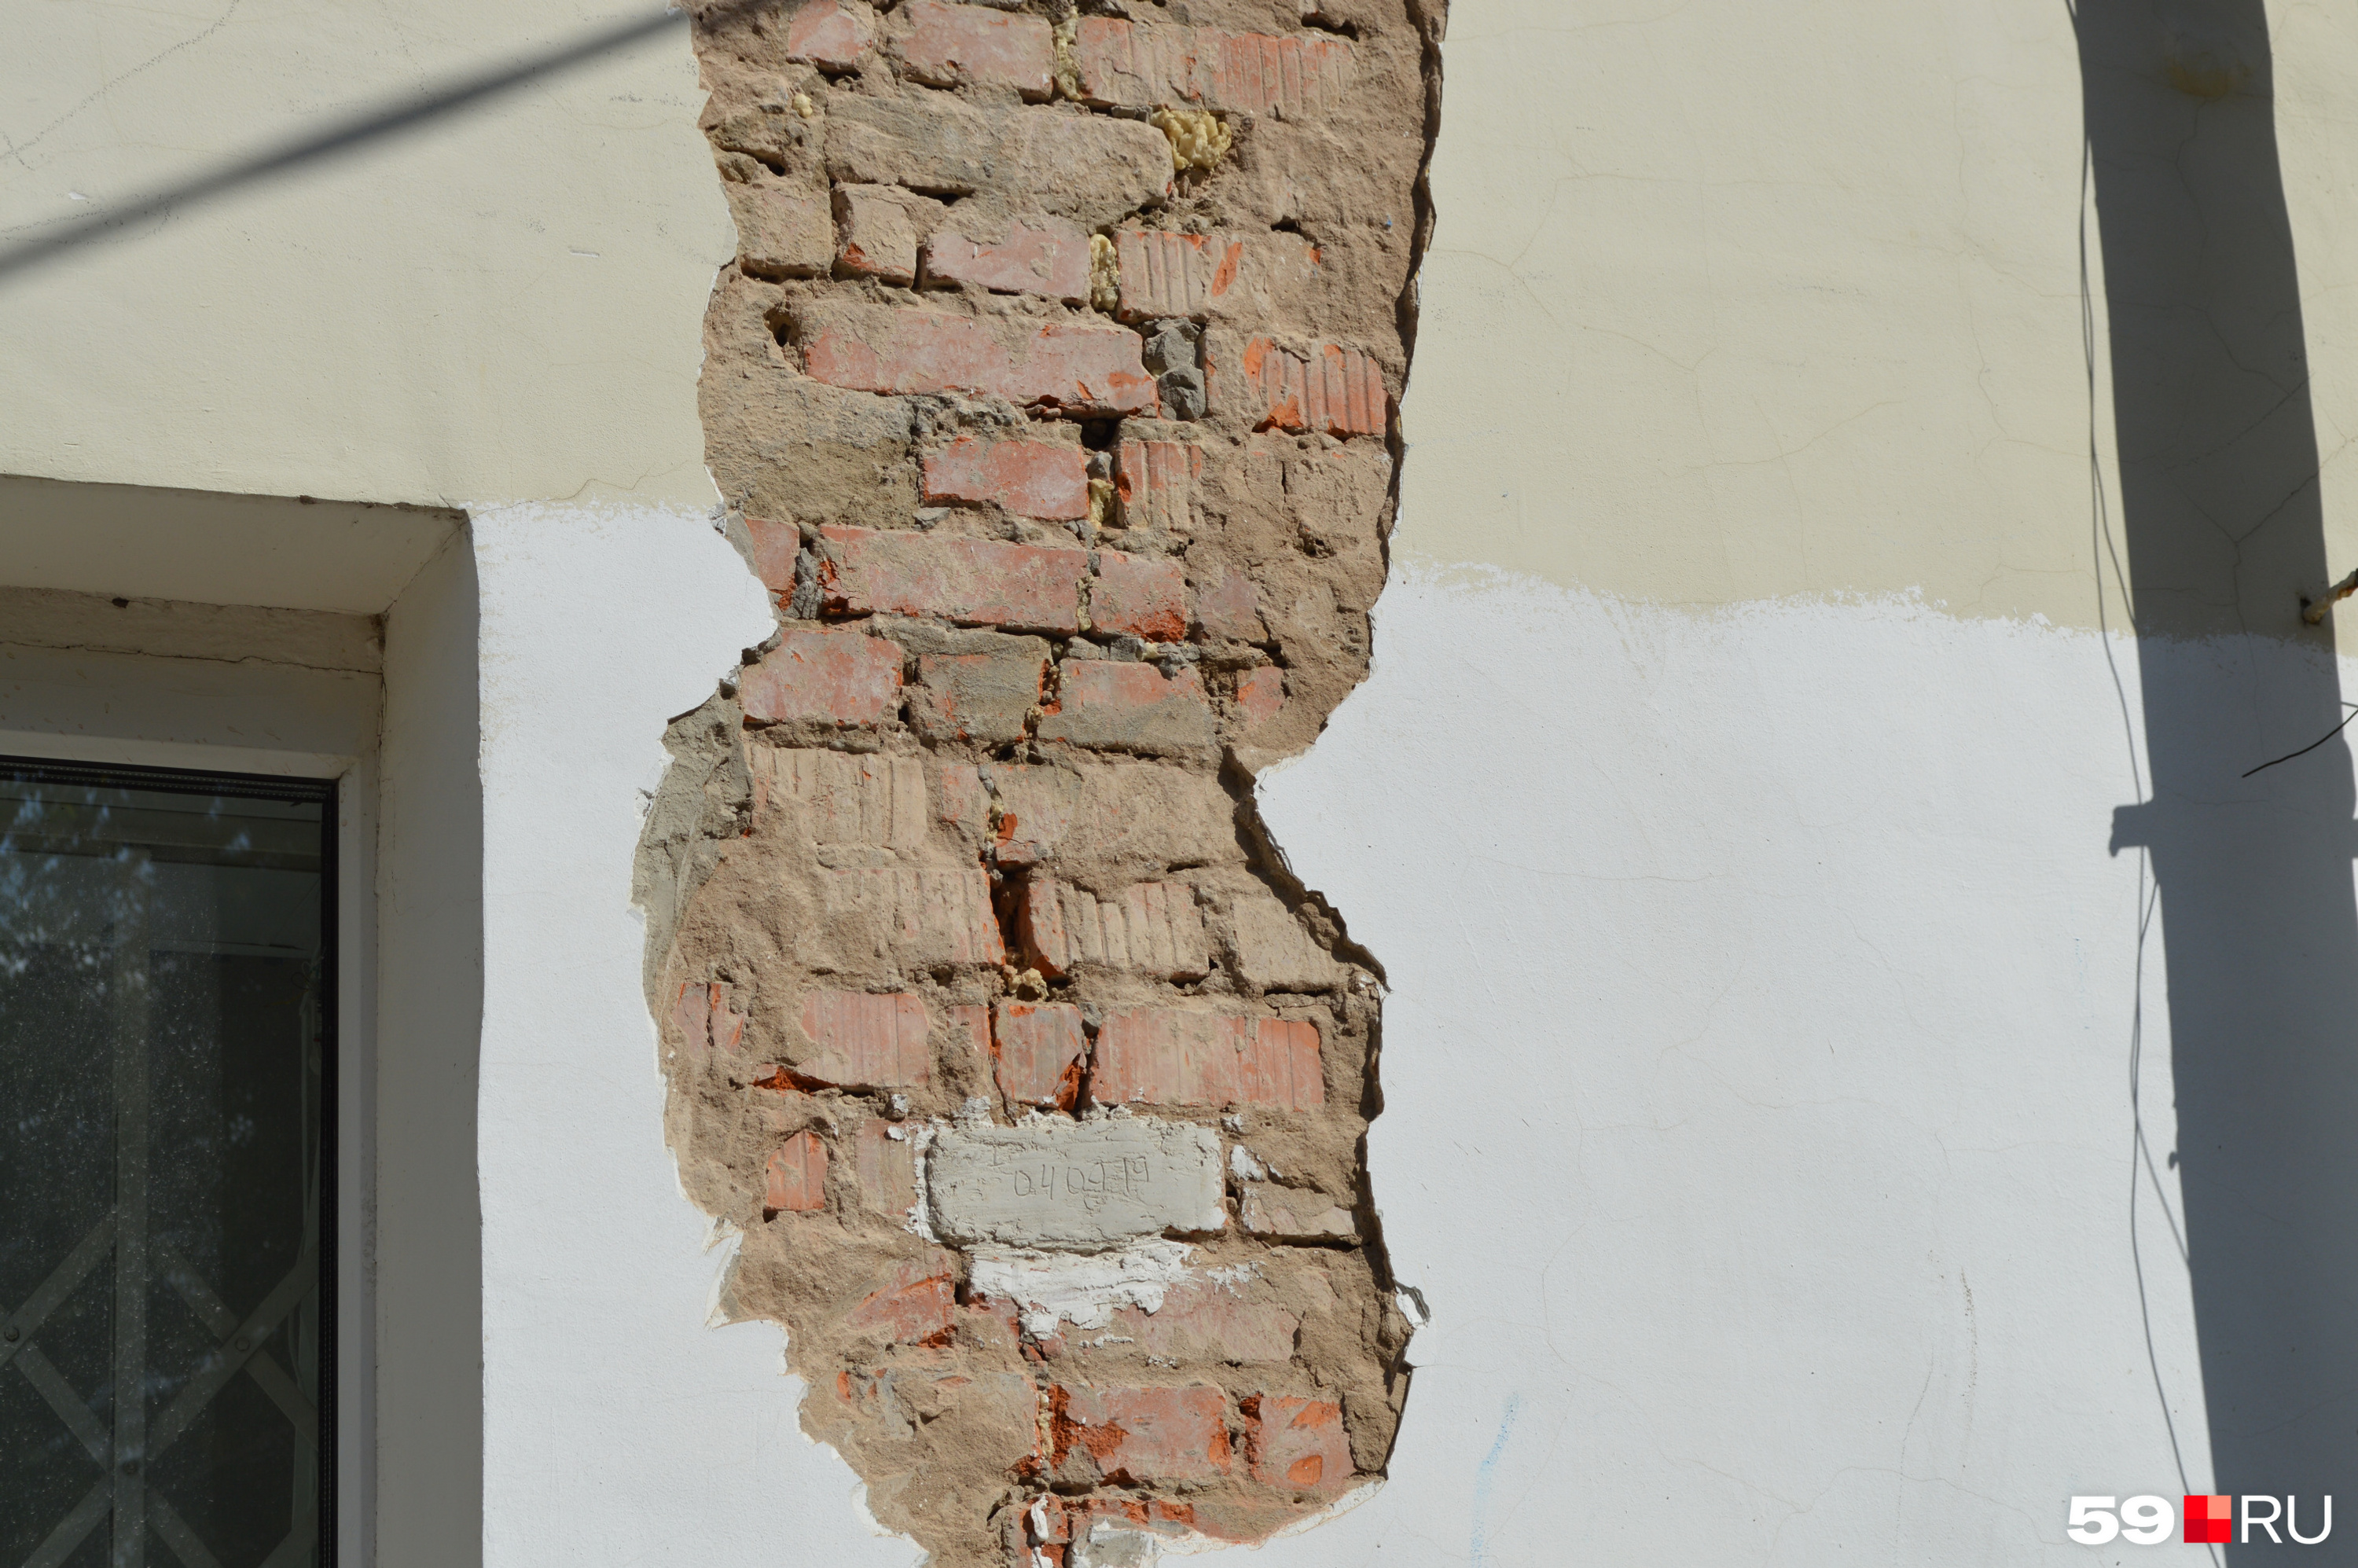 Трещина в кирпичной стене. Сквозные трещины в кирпичной стене. Вертикальные трещины в стенах. Трещина в многоквартирном доме из кирпича. Сквозная трещина в стене